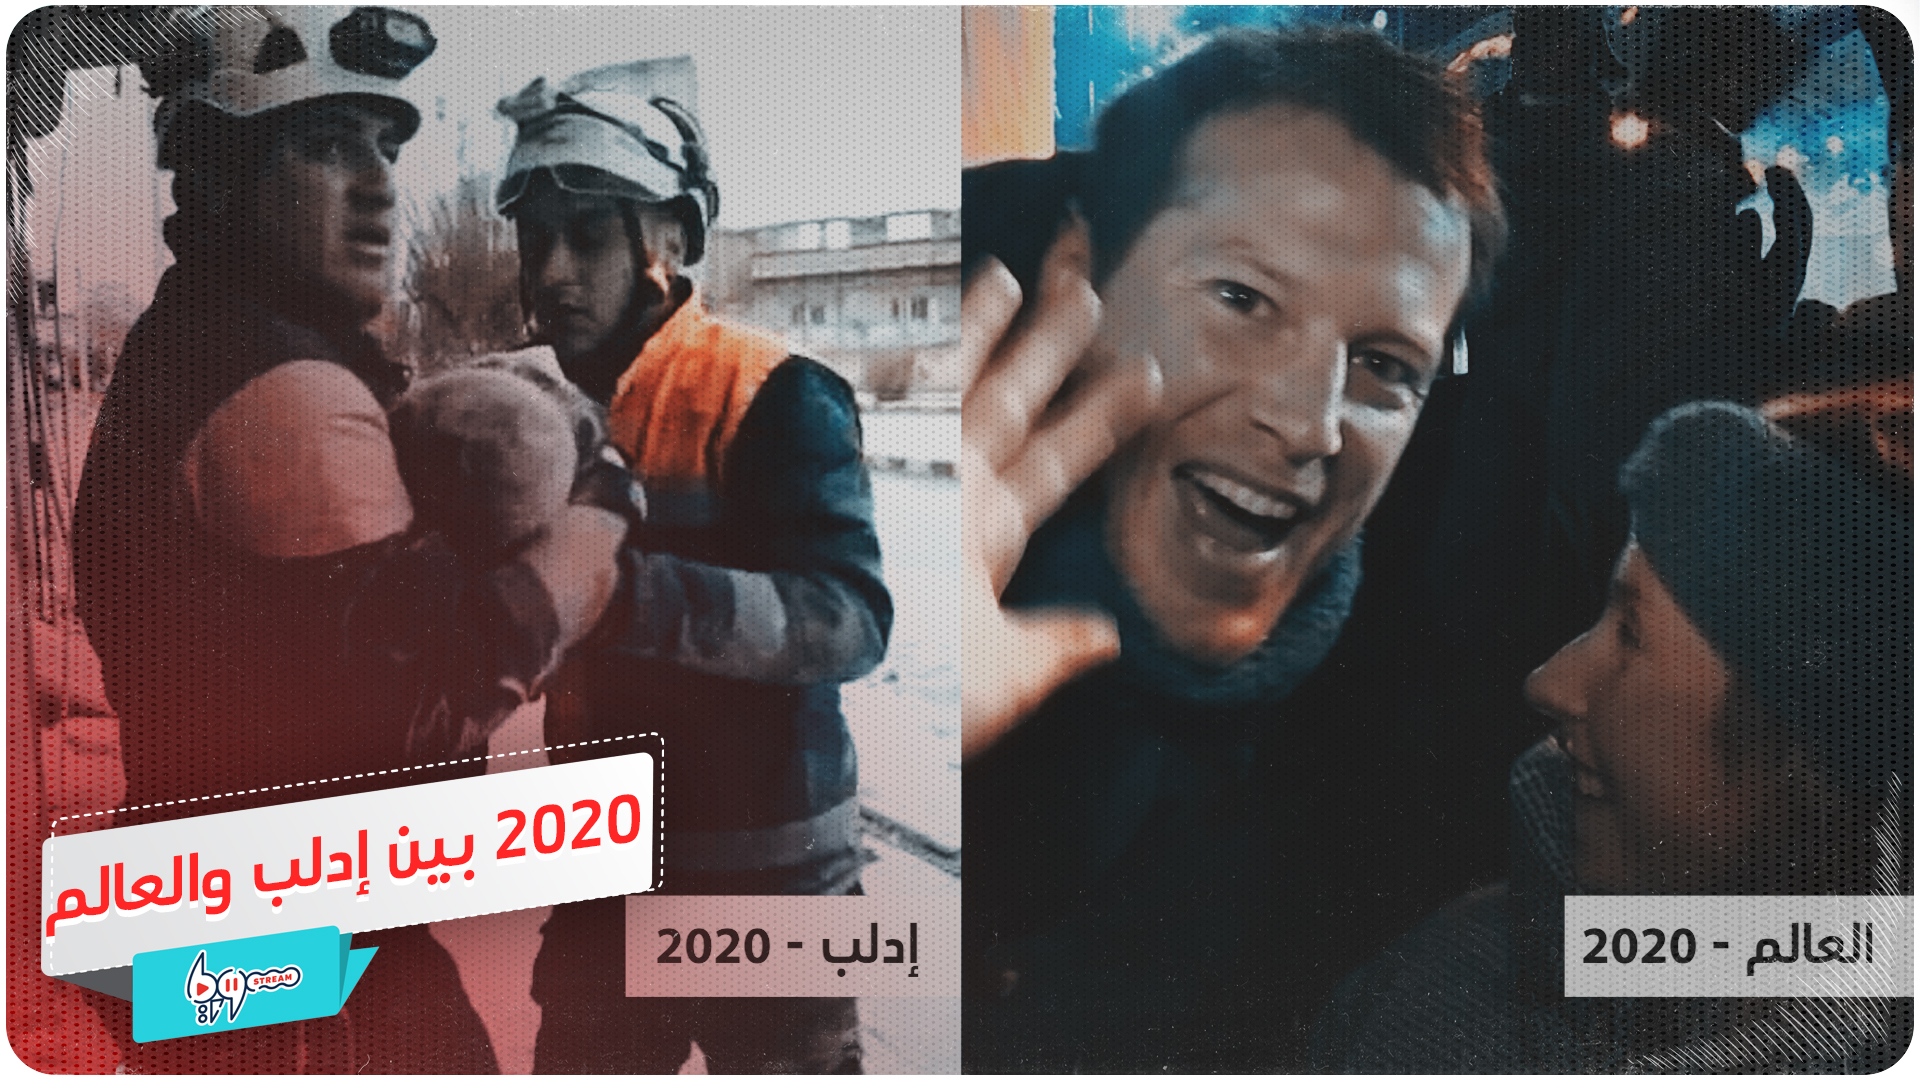 العام الجديد بين إدلب والعالم